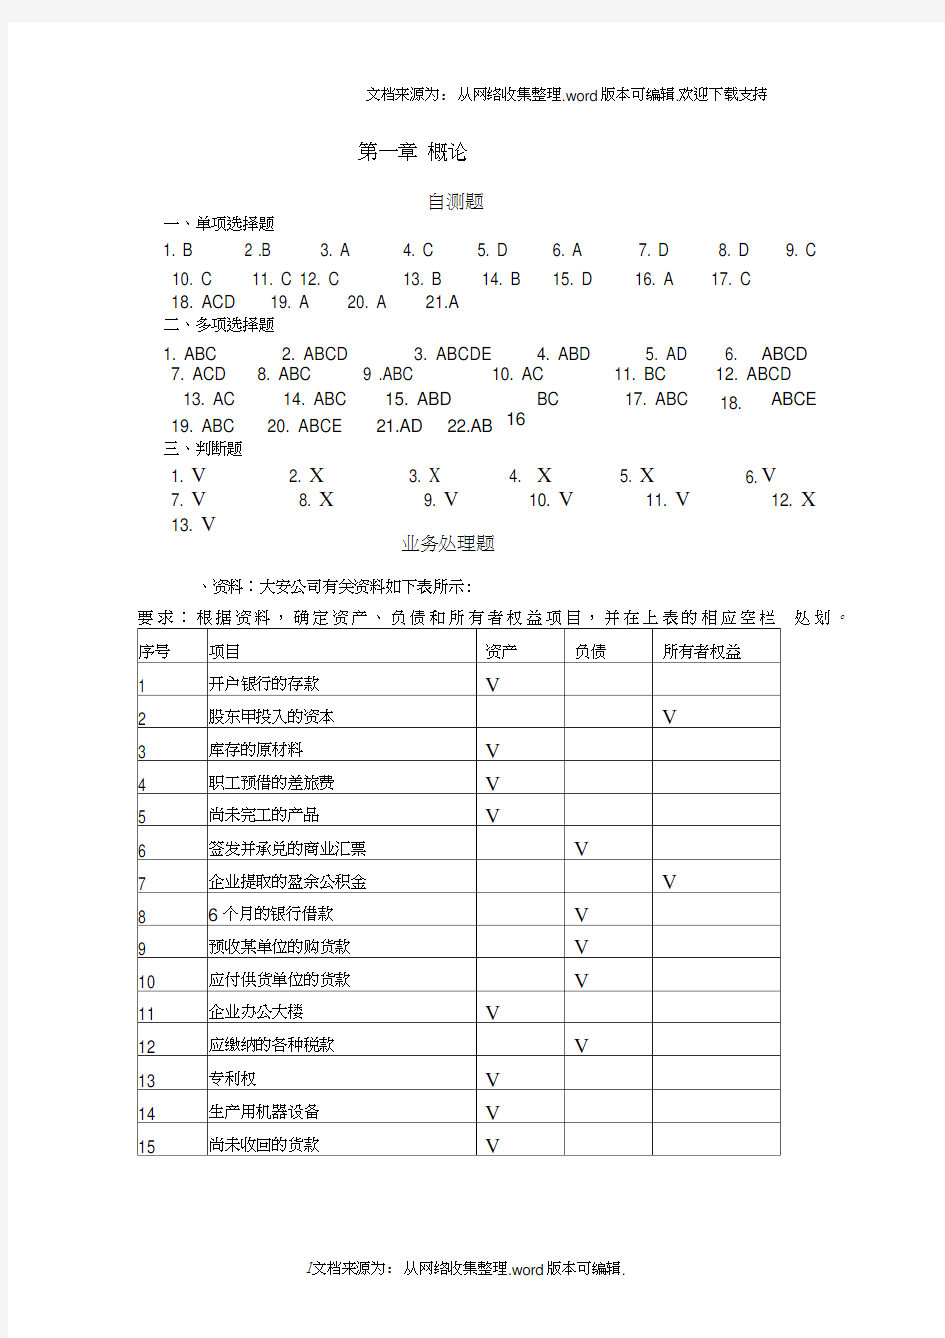 基础会计学(第二版)李会青课后习题答案(20210120131117)